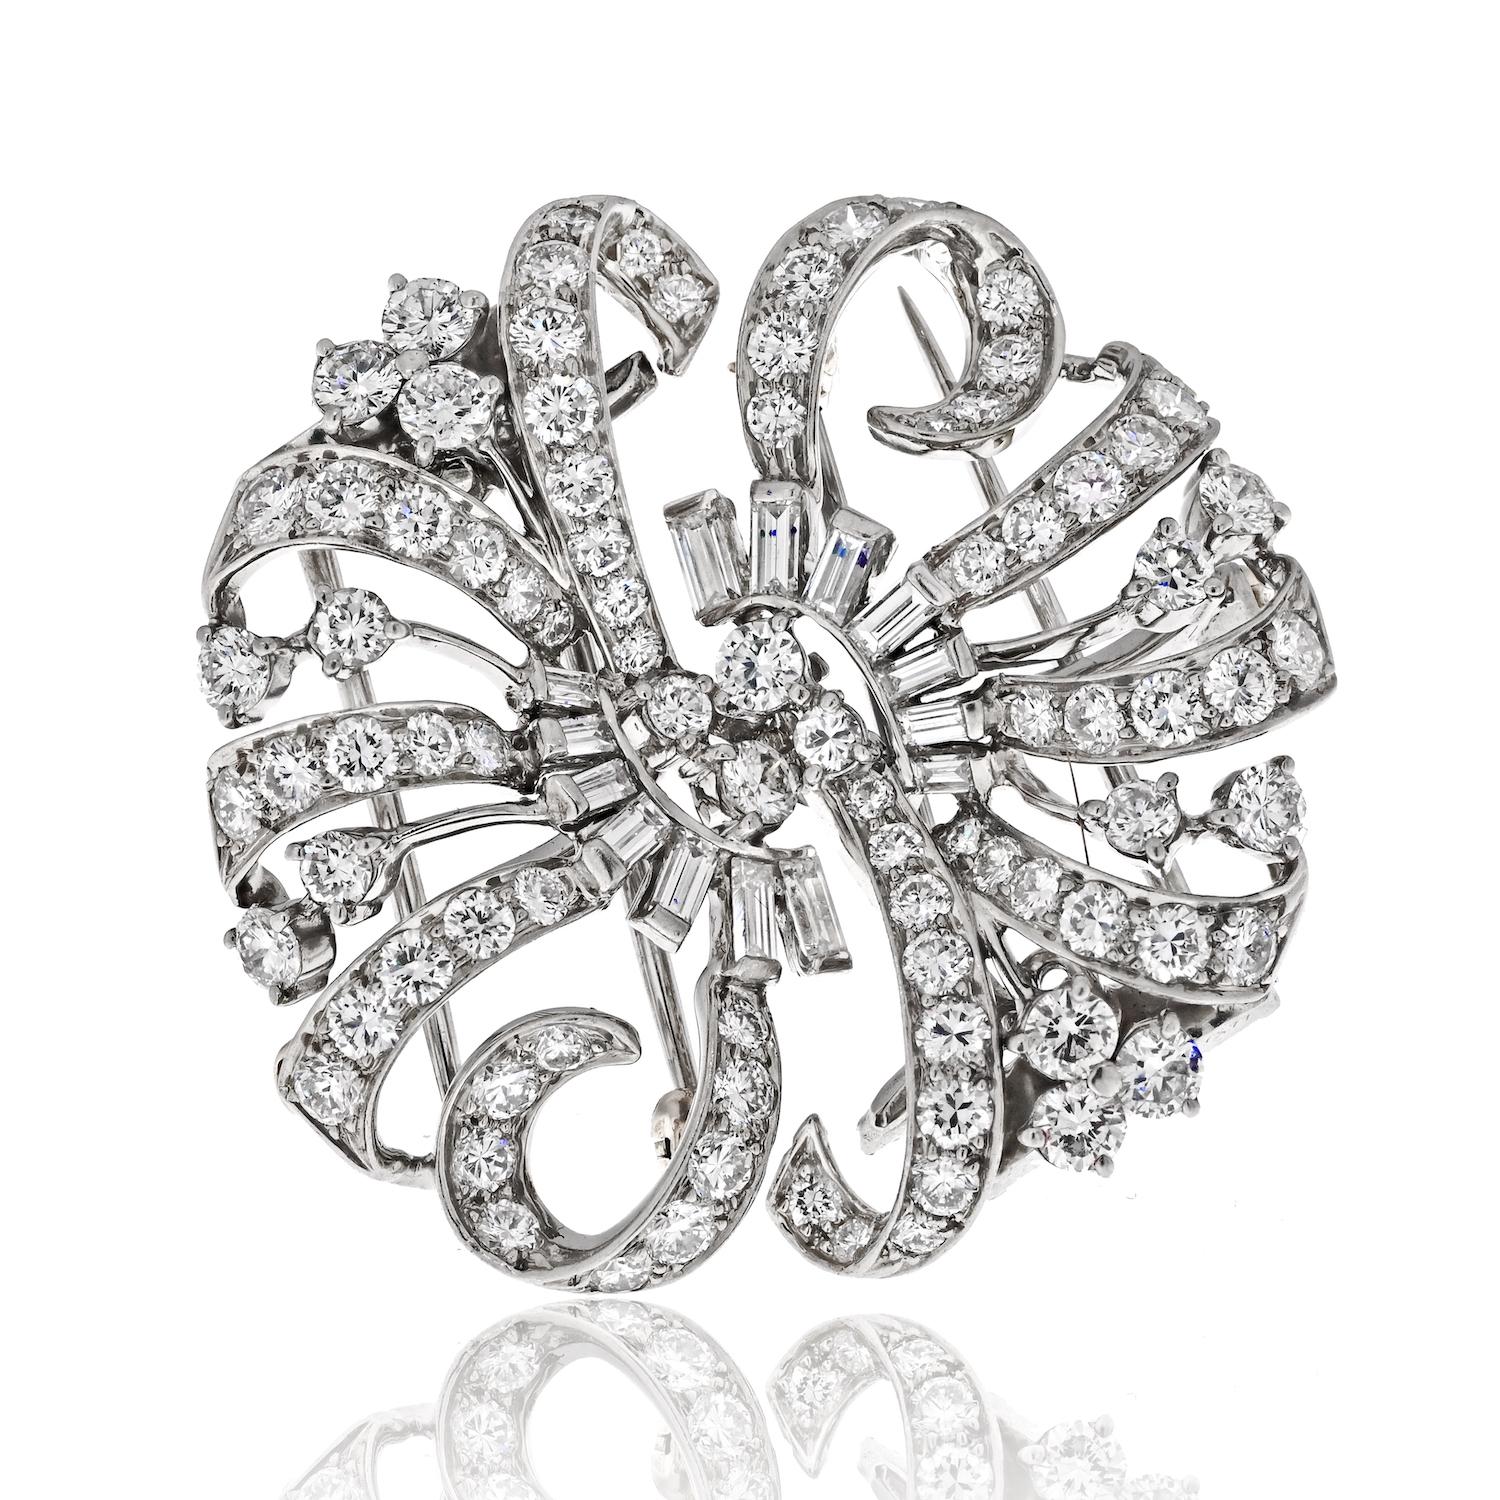 Préparez-vous à être enchantés par l'élégance et la polyvalence de cette broche en diamants Tiffany & Co. Réalisée en platine exquis, cette pièce remarquable met en valeur des diamants ronds et baguettes, pour un total impressionnant de 7,20